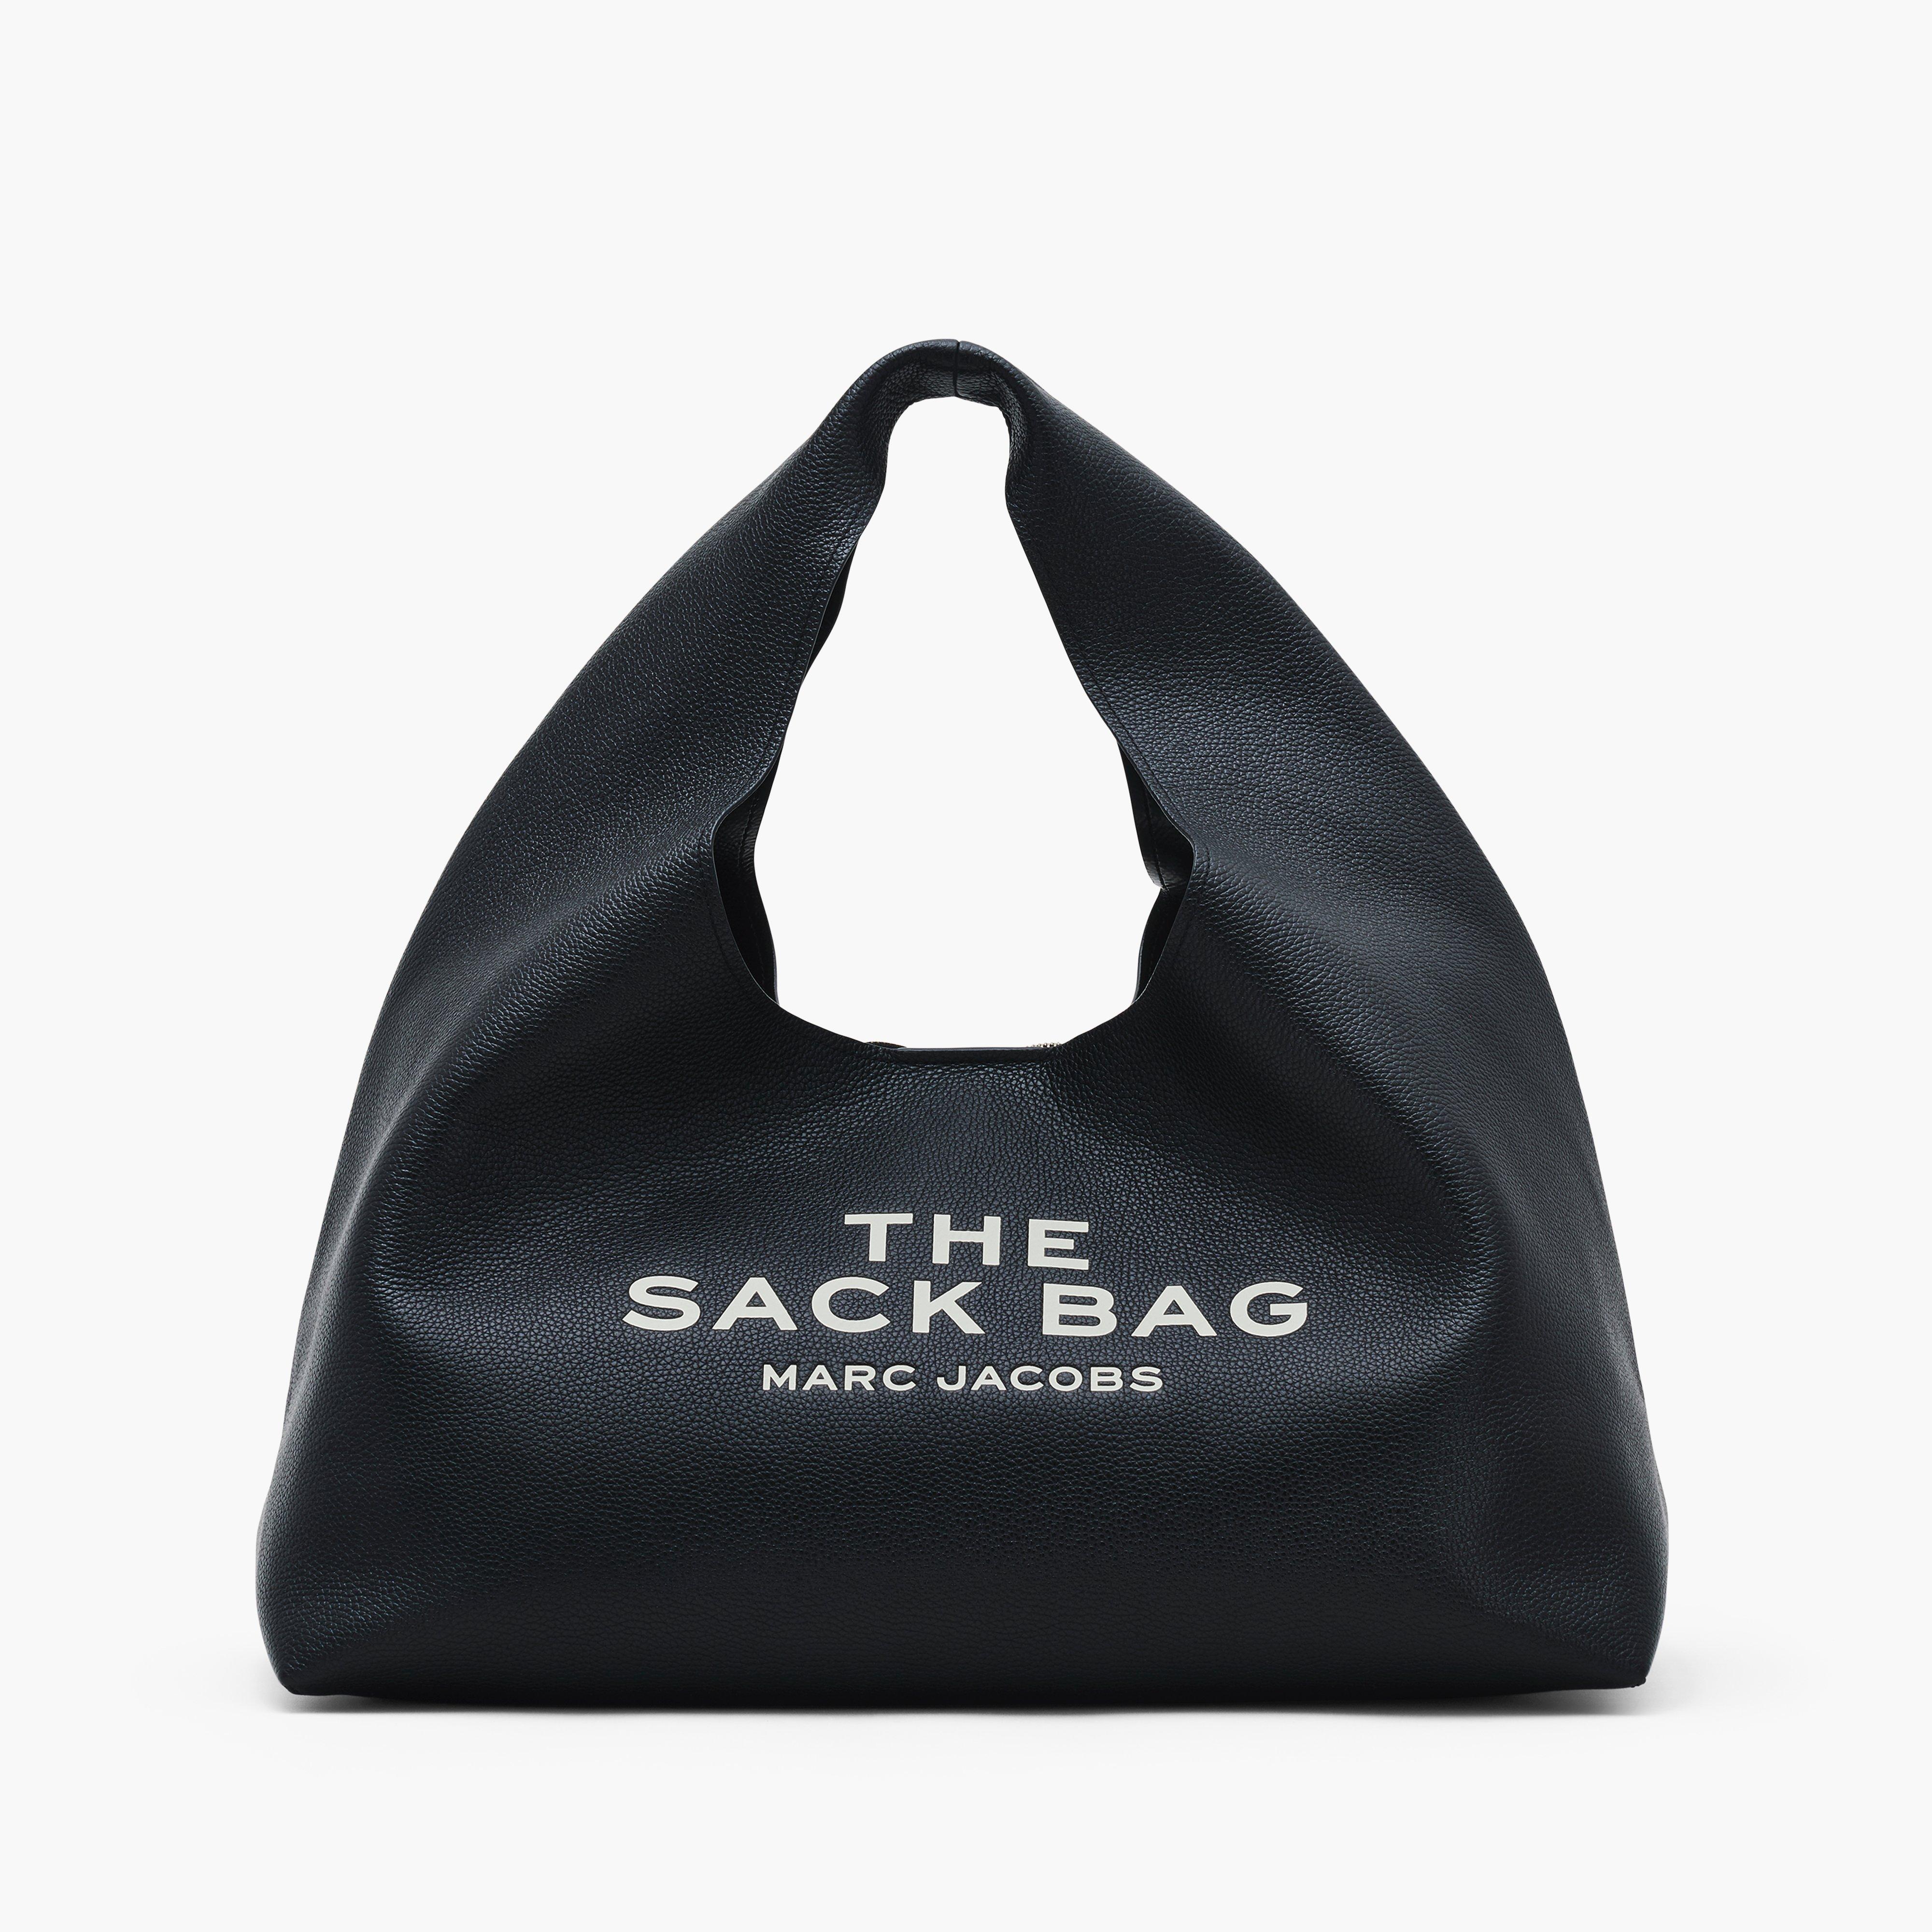 Marc Jacobs The Sack leather shoulder bag - 100